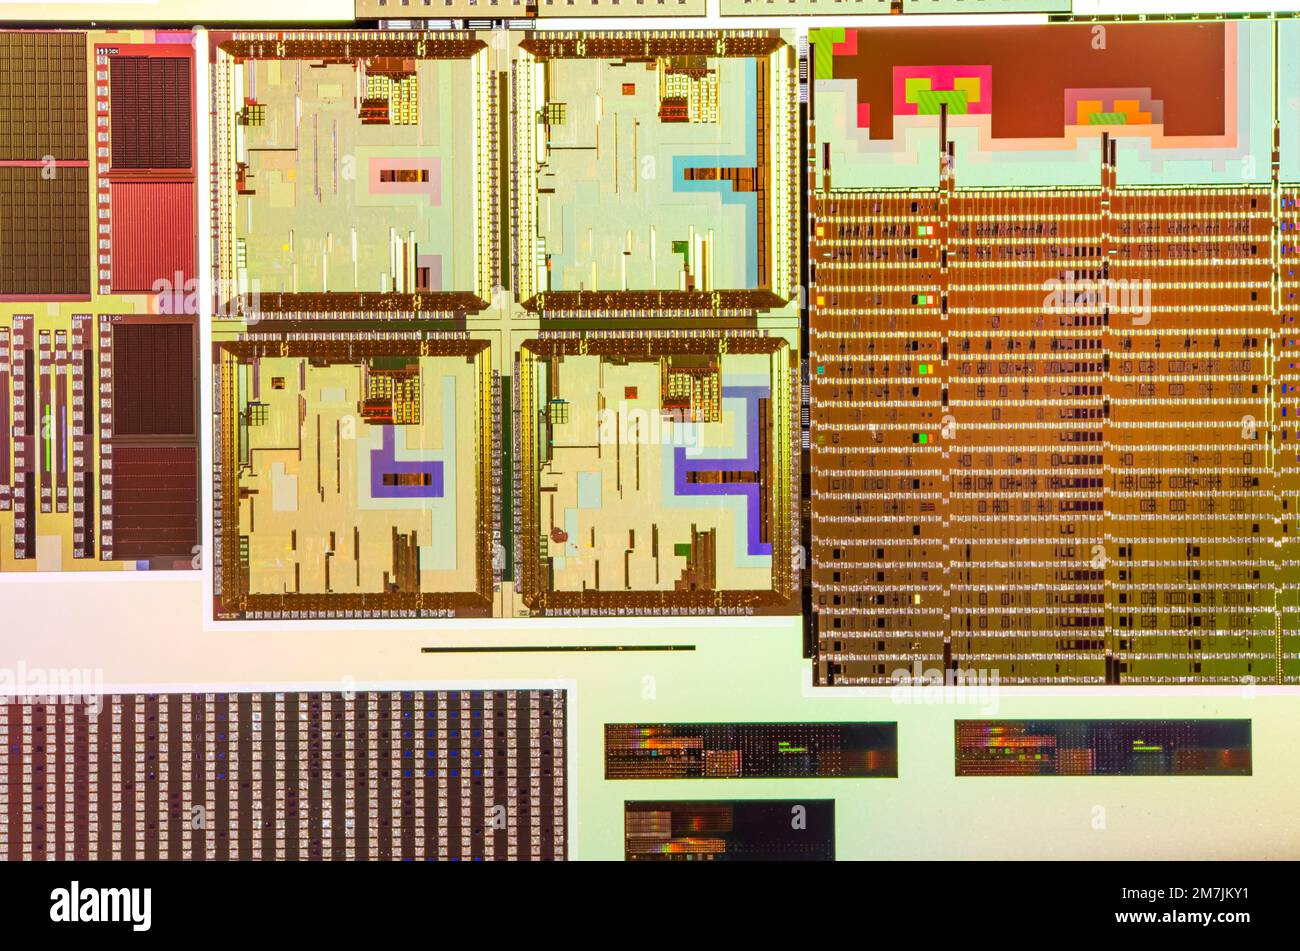 Silizium-Wafer mit Mikrochips, die in der Elektronik für die Herstellung von integrierten Schaltungen verwendet werden. Stockfoto